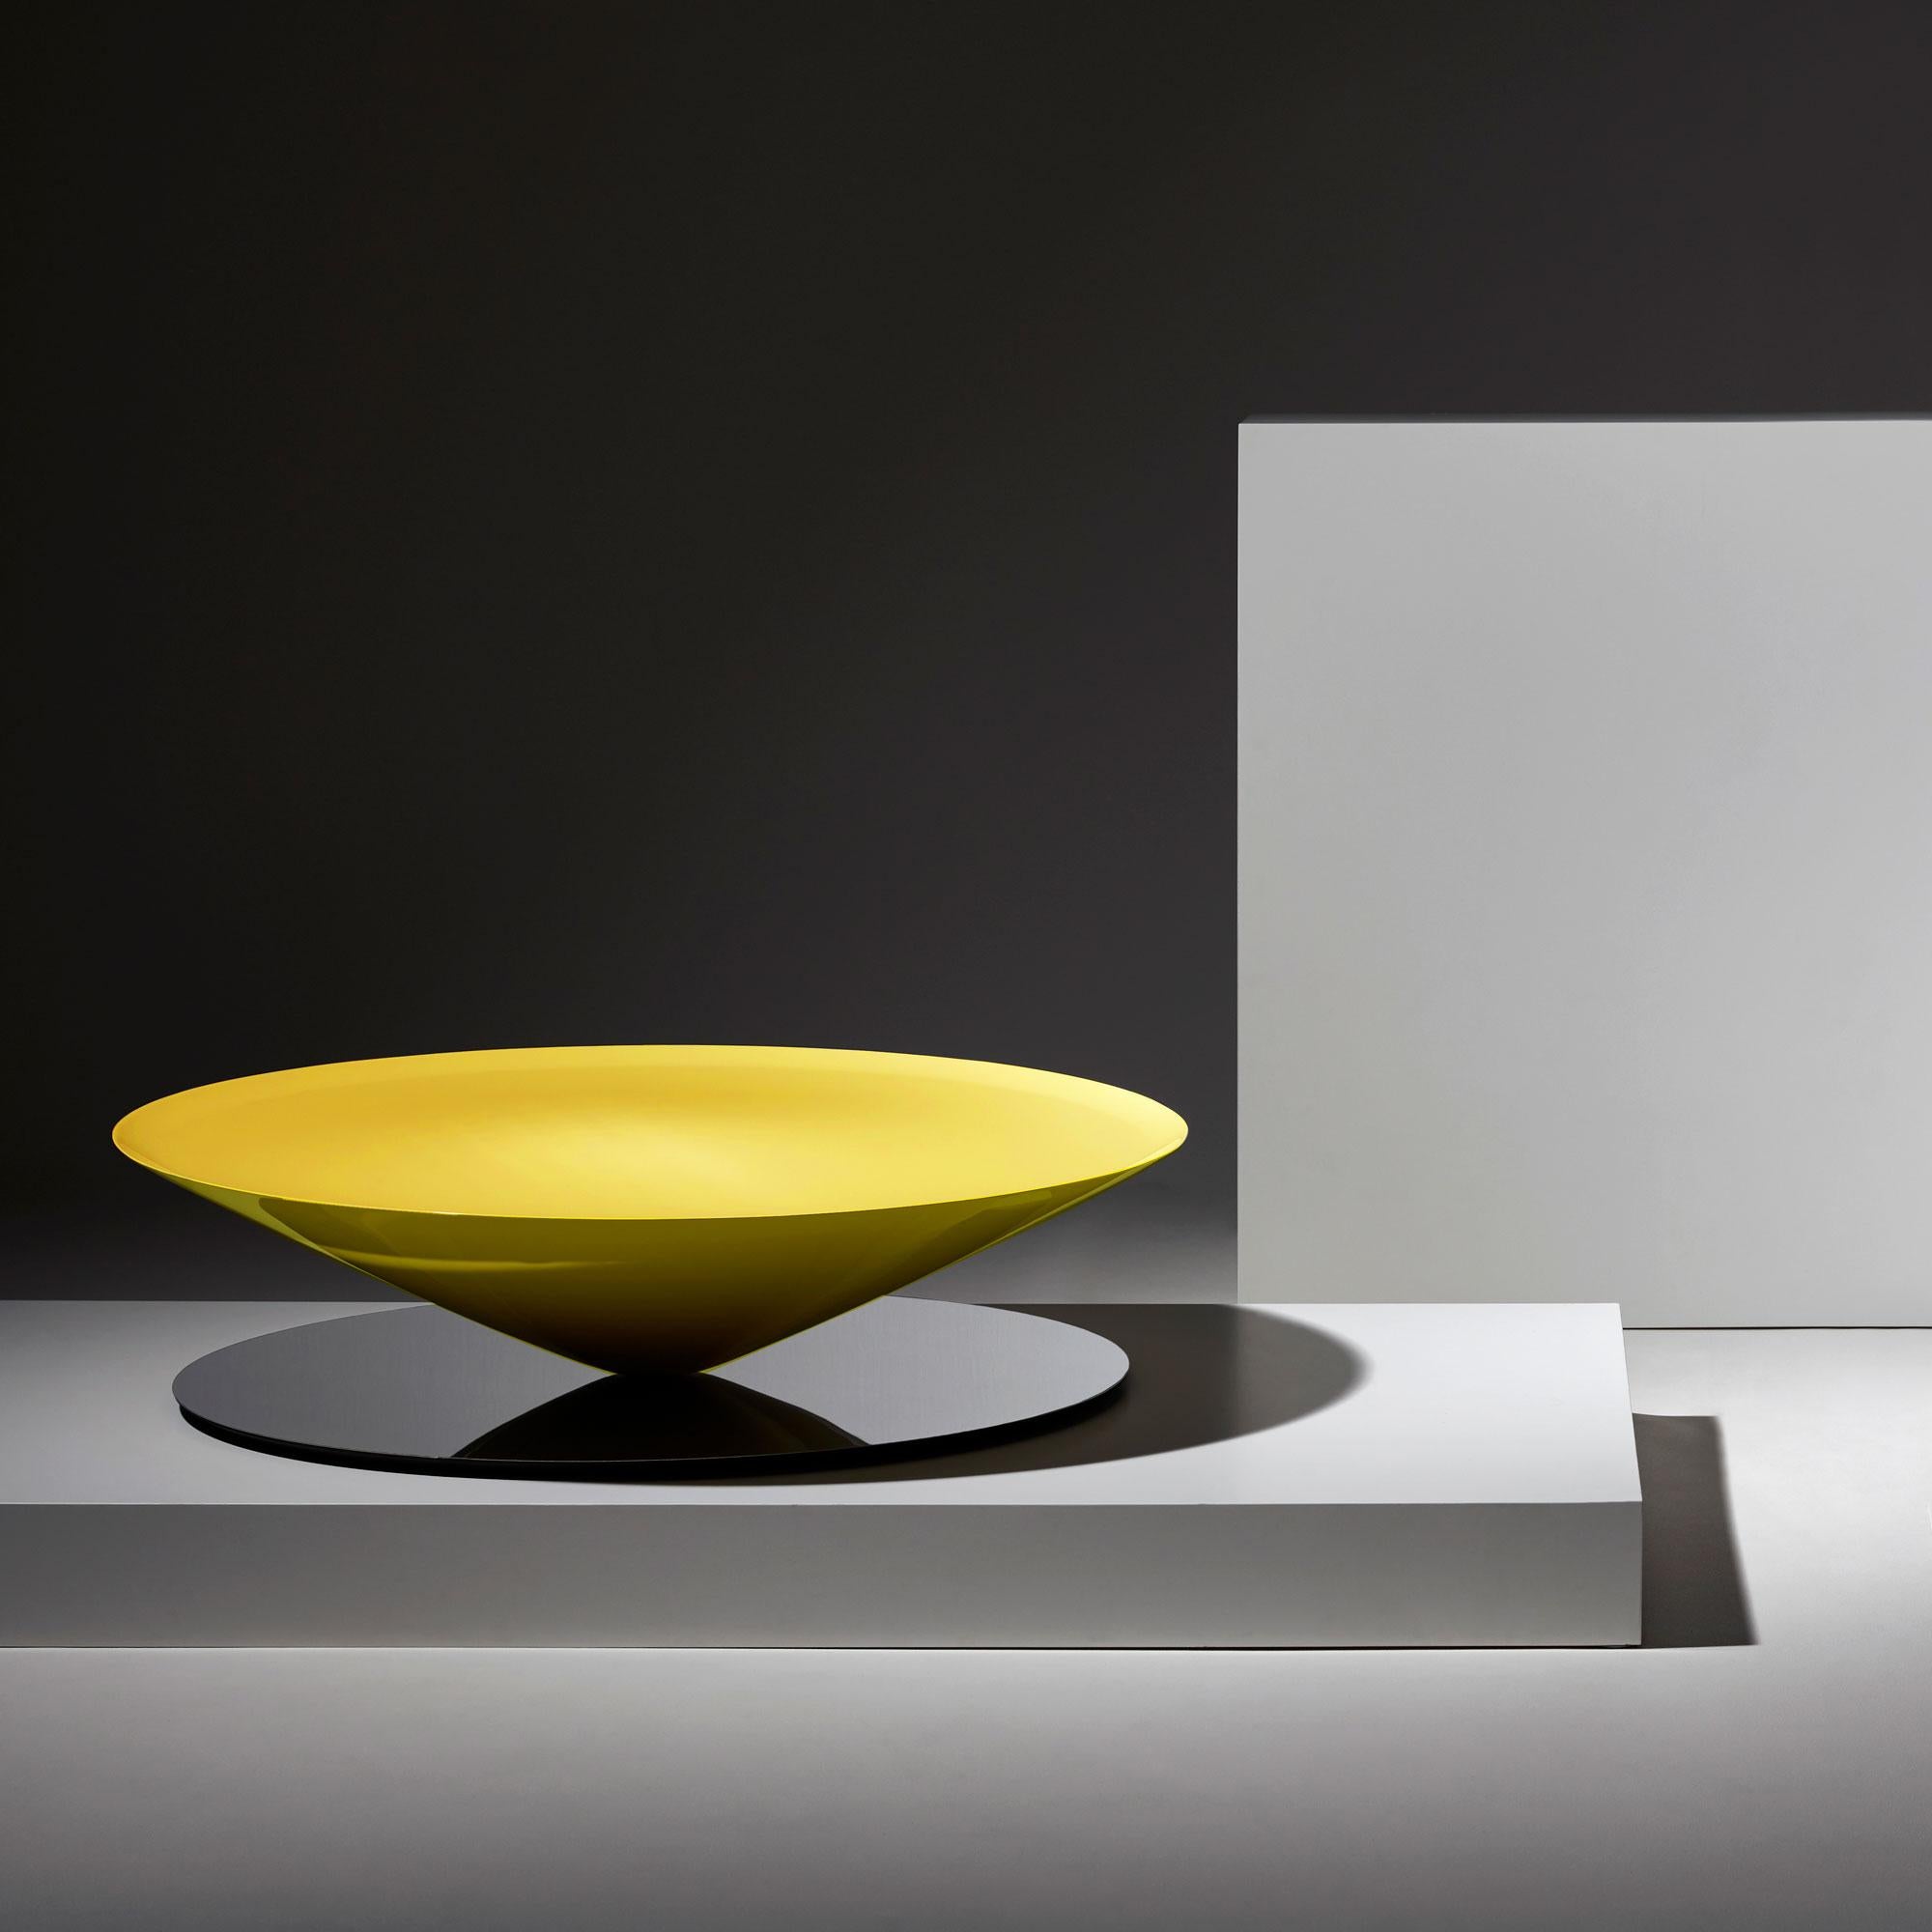 Float est une table basse sculpturale qui défie les sens et la perception. Un cône massif en métal flotte apparemment au-dessus d'une base en acier poli miroir.
Le dessin géométrique est adouci par des détails raffinés tels que la lèvre biseautée